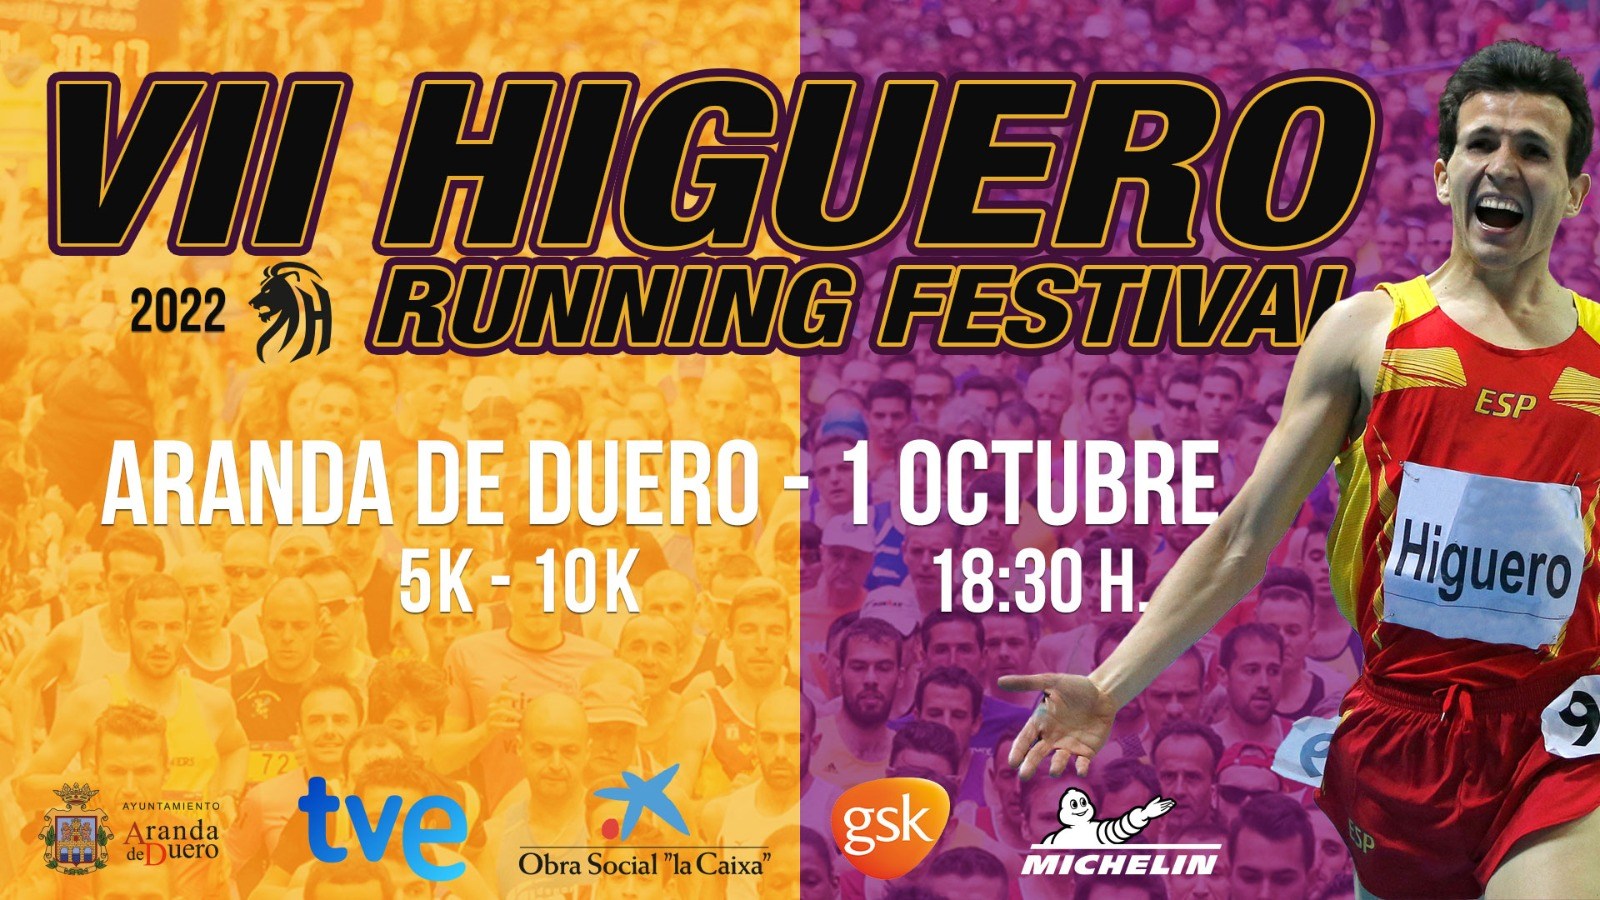 Event Poster VIII HIGUERO RUNNING FESTIVAL 2022